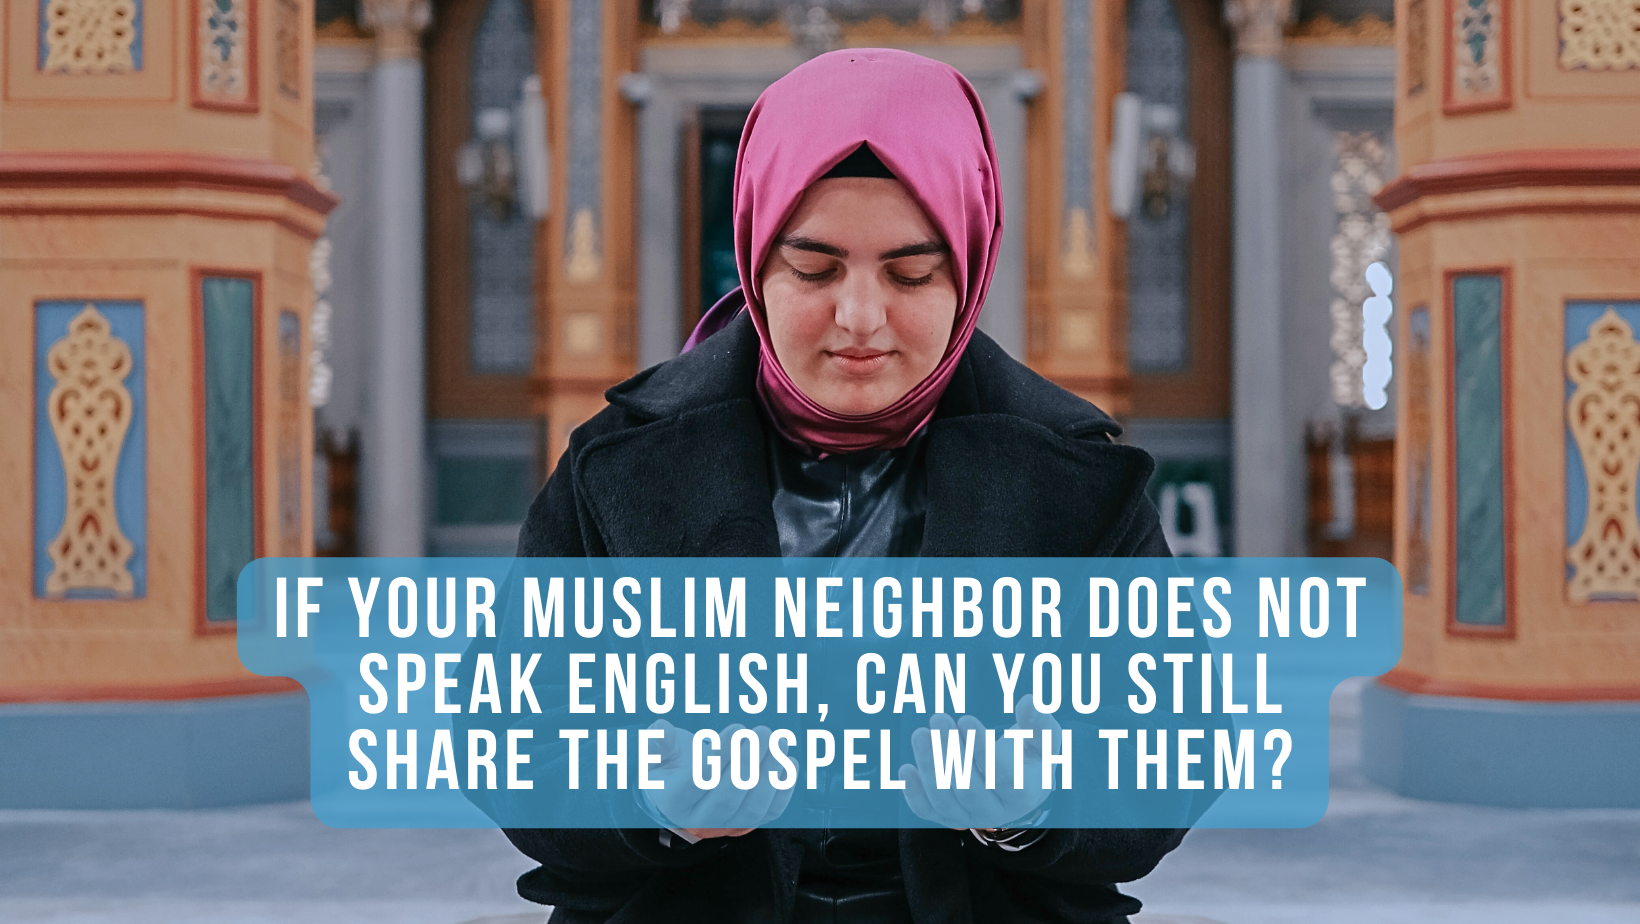 Blog title image with Muslim woman praying